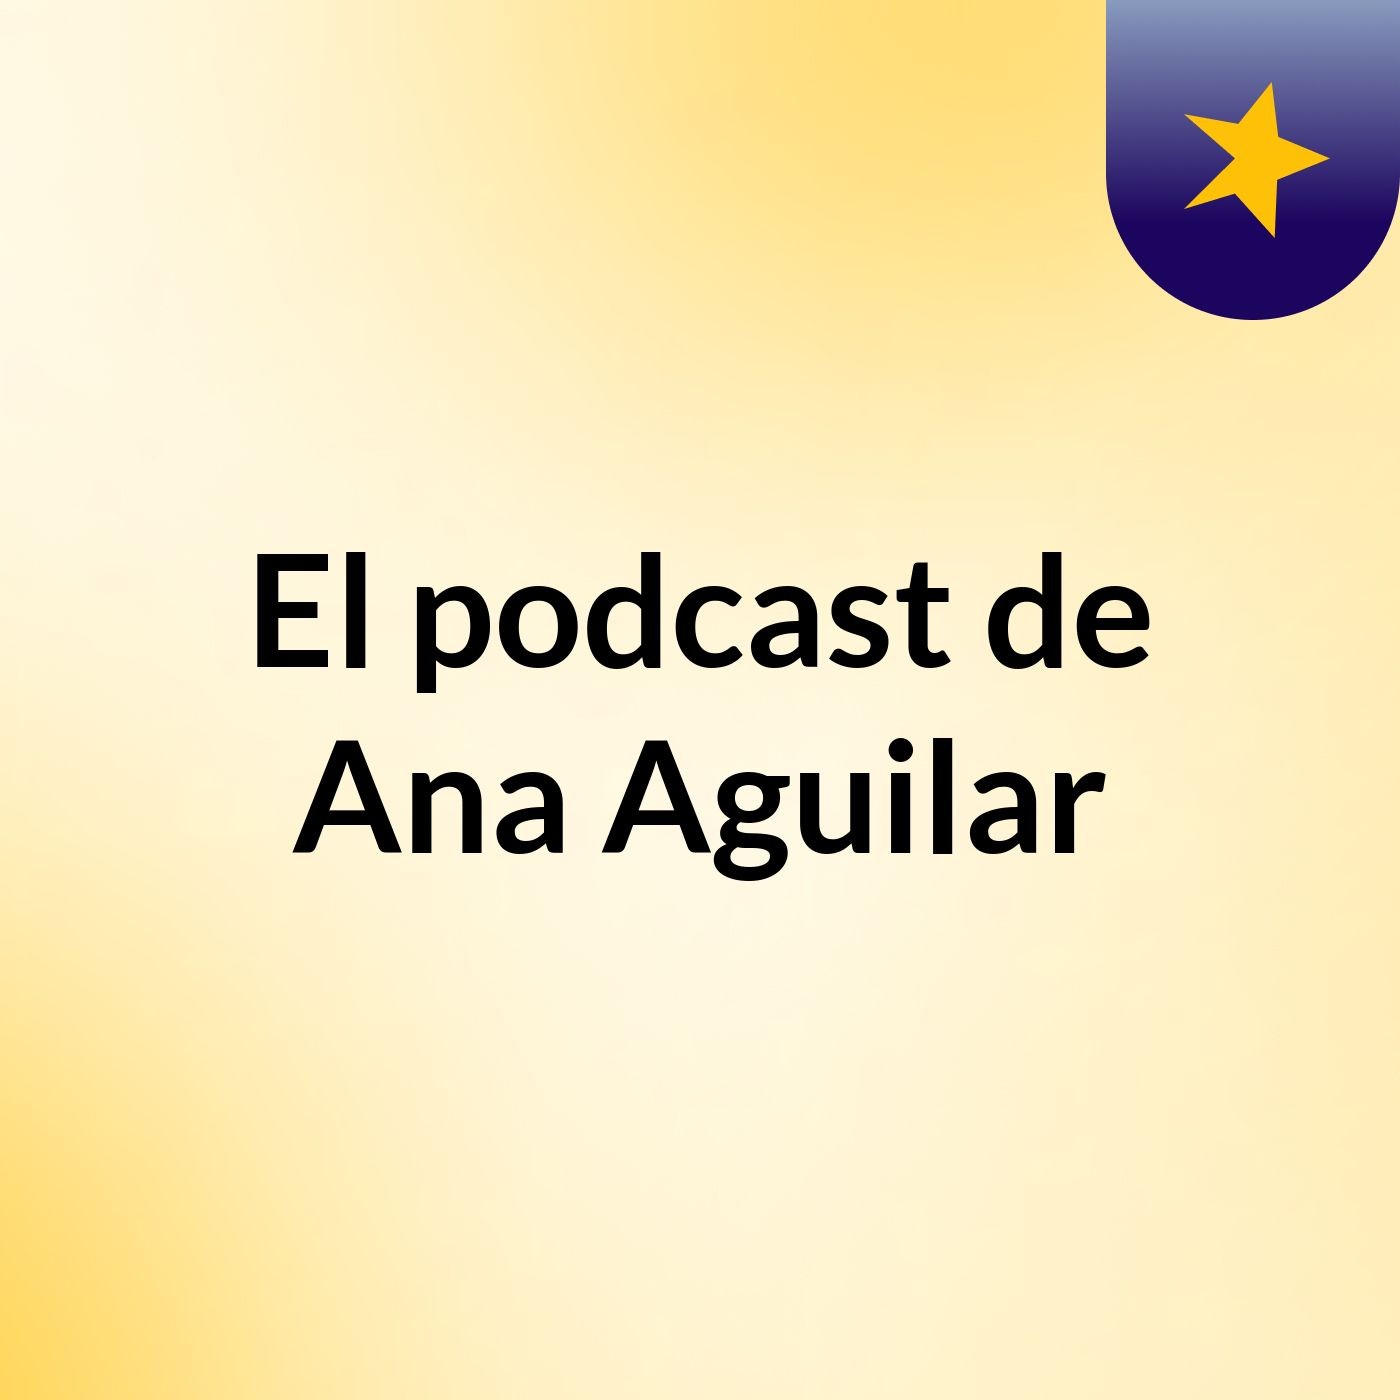 El podcast de Ana Aguilar